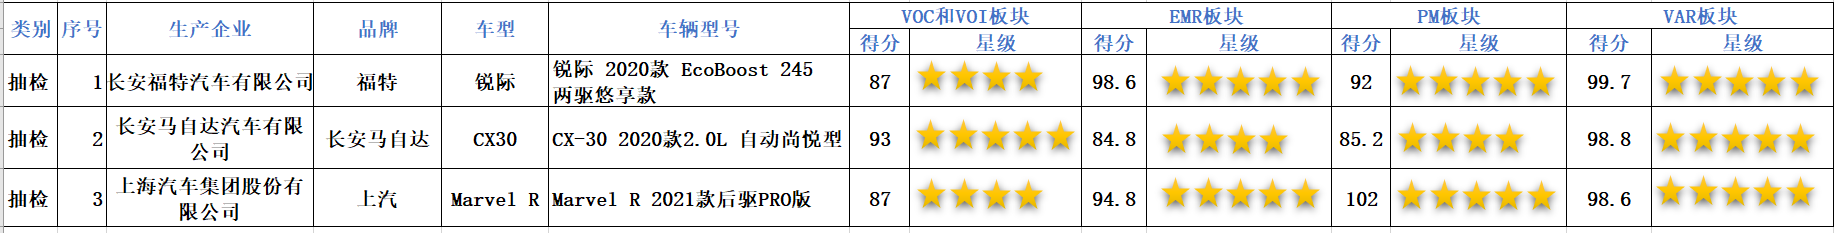 中国汽车健康指数管理中心发布中国汽车健康指数（C-AHI）第二批车型测评结果